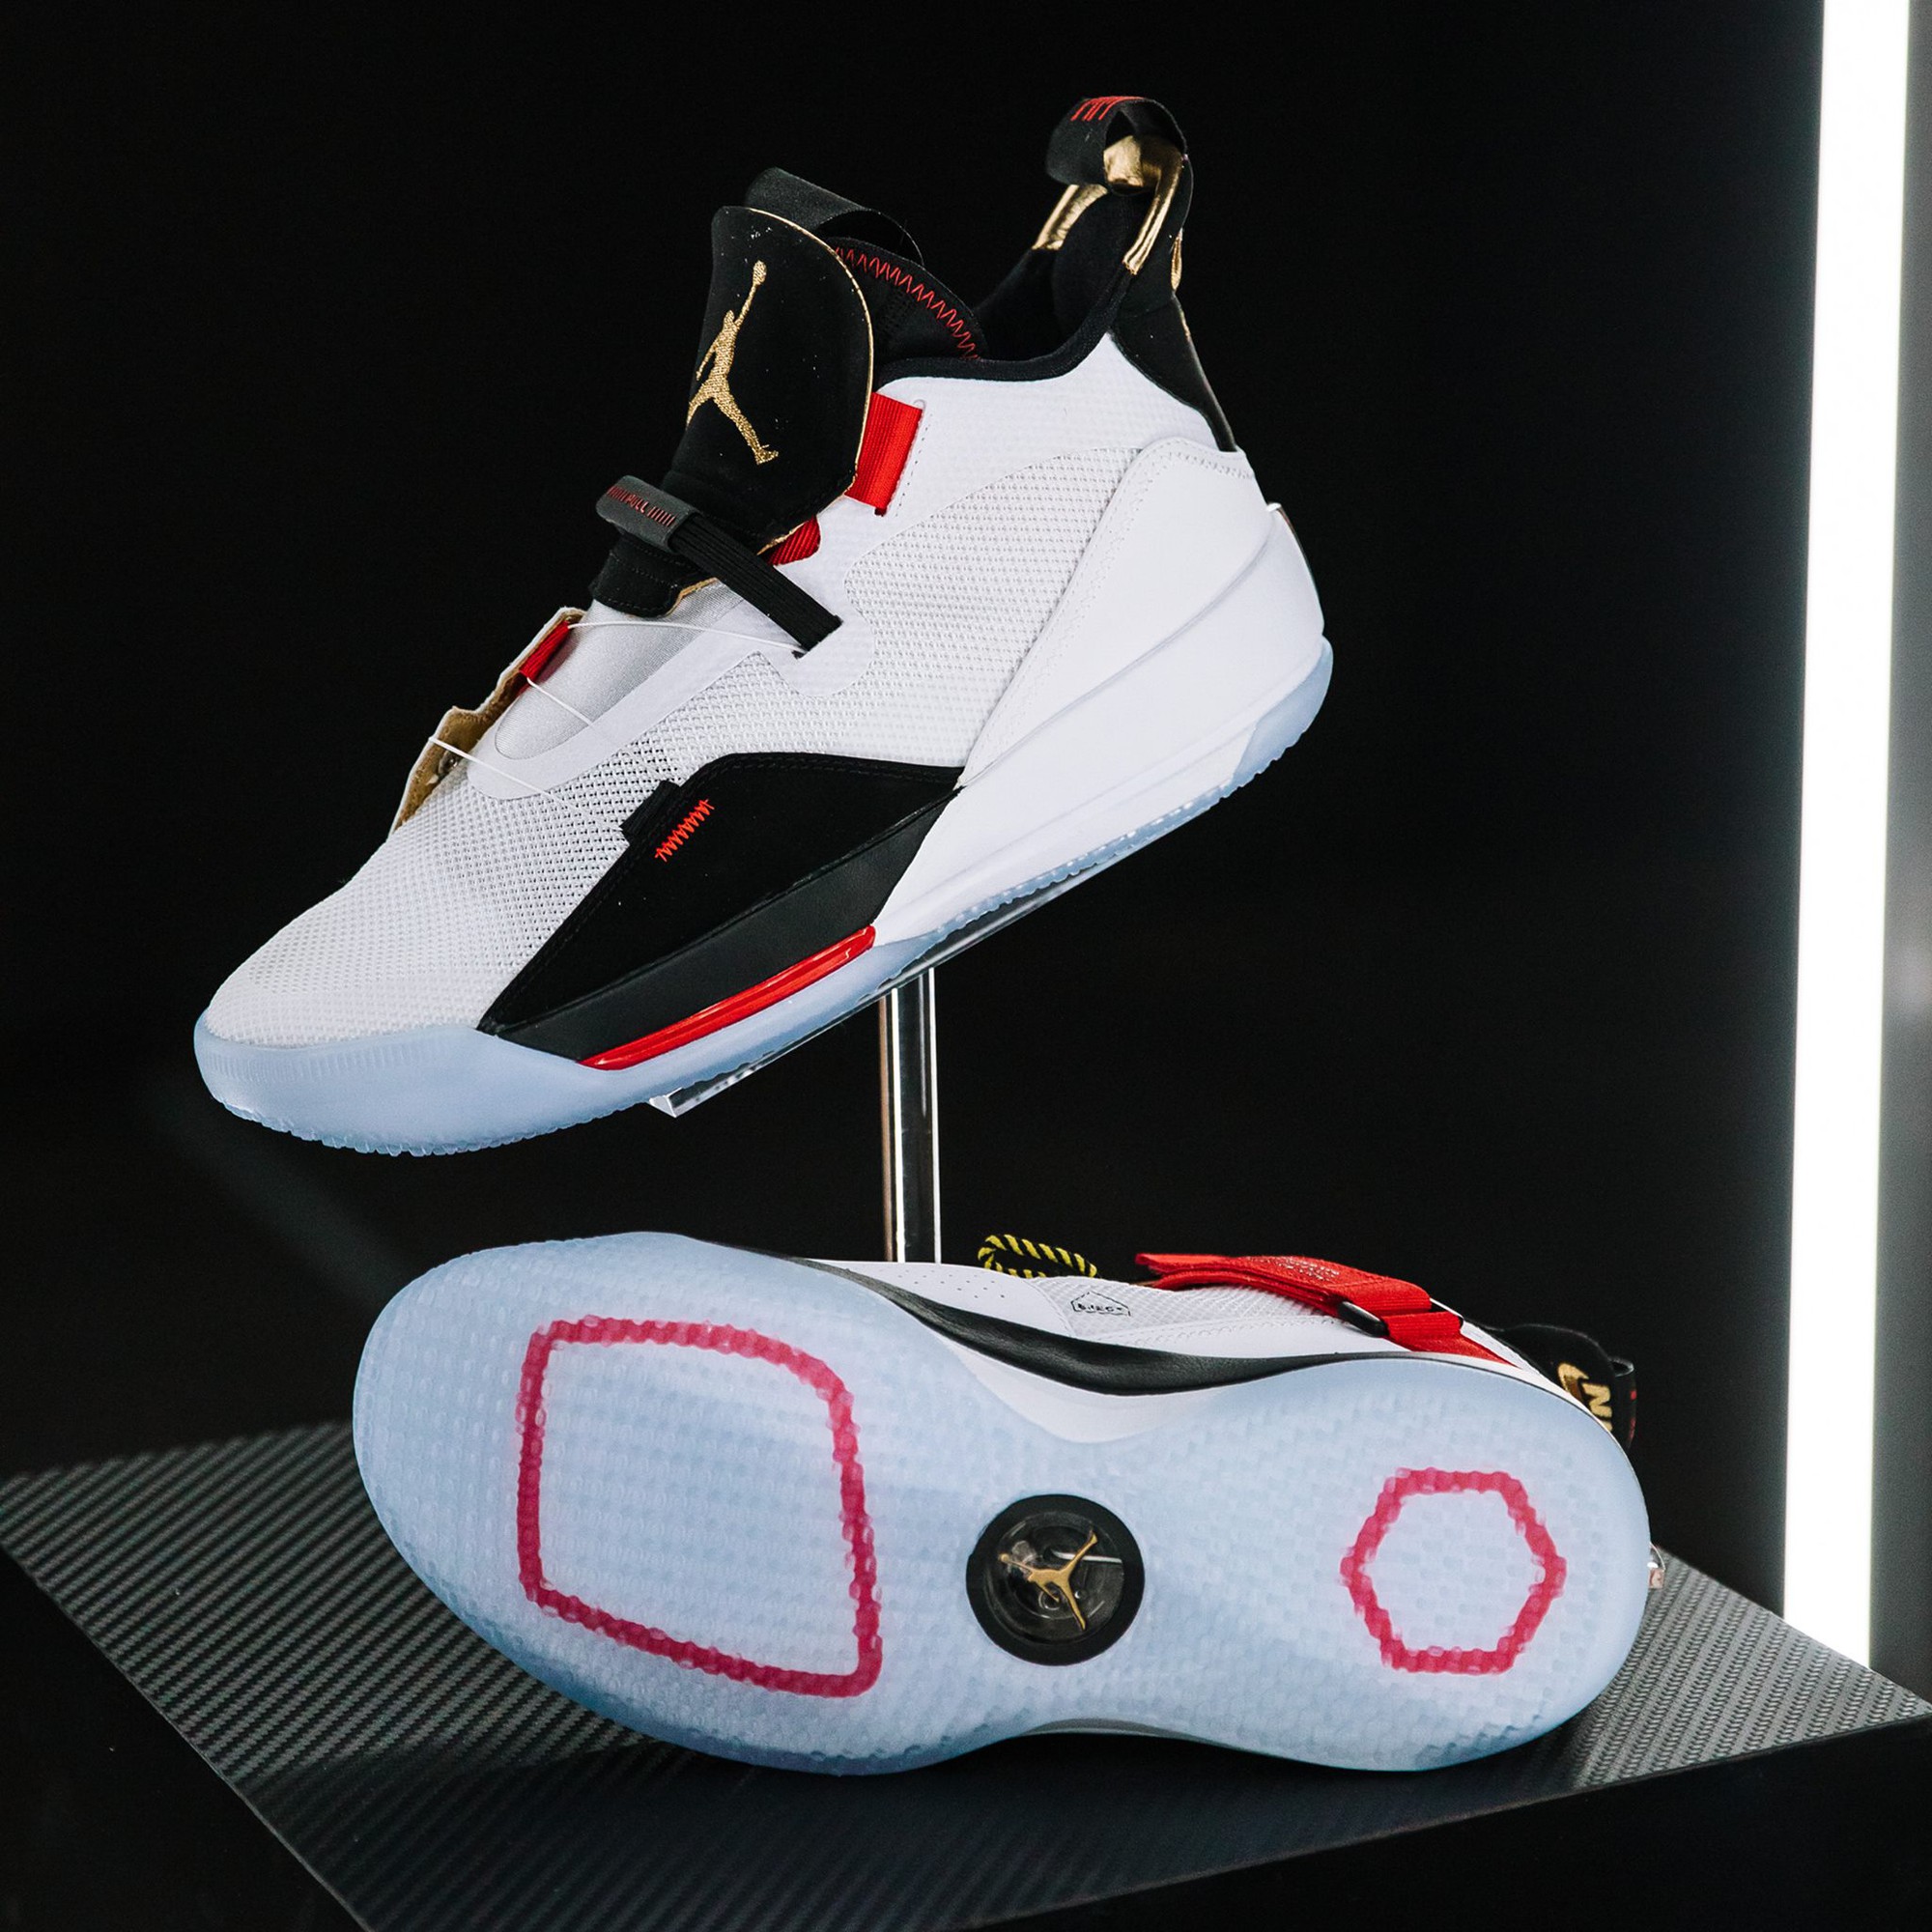 Đây là Air Jordan 33, mẫu giày bóng rổ độc nhất, chưa từng thấy từ trước đến nay